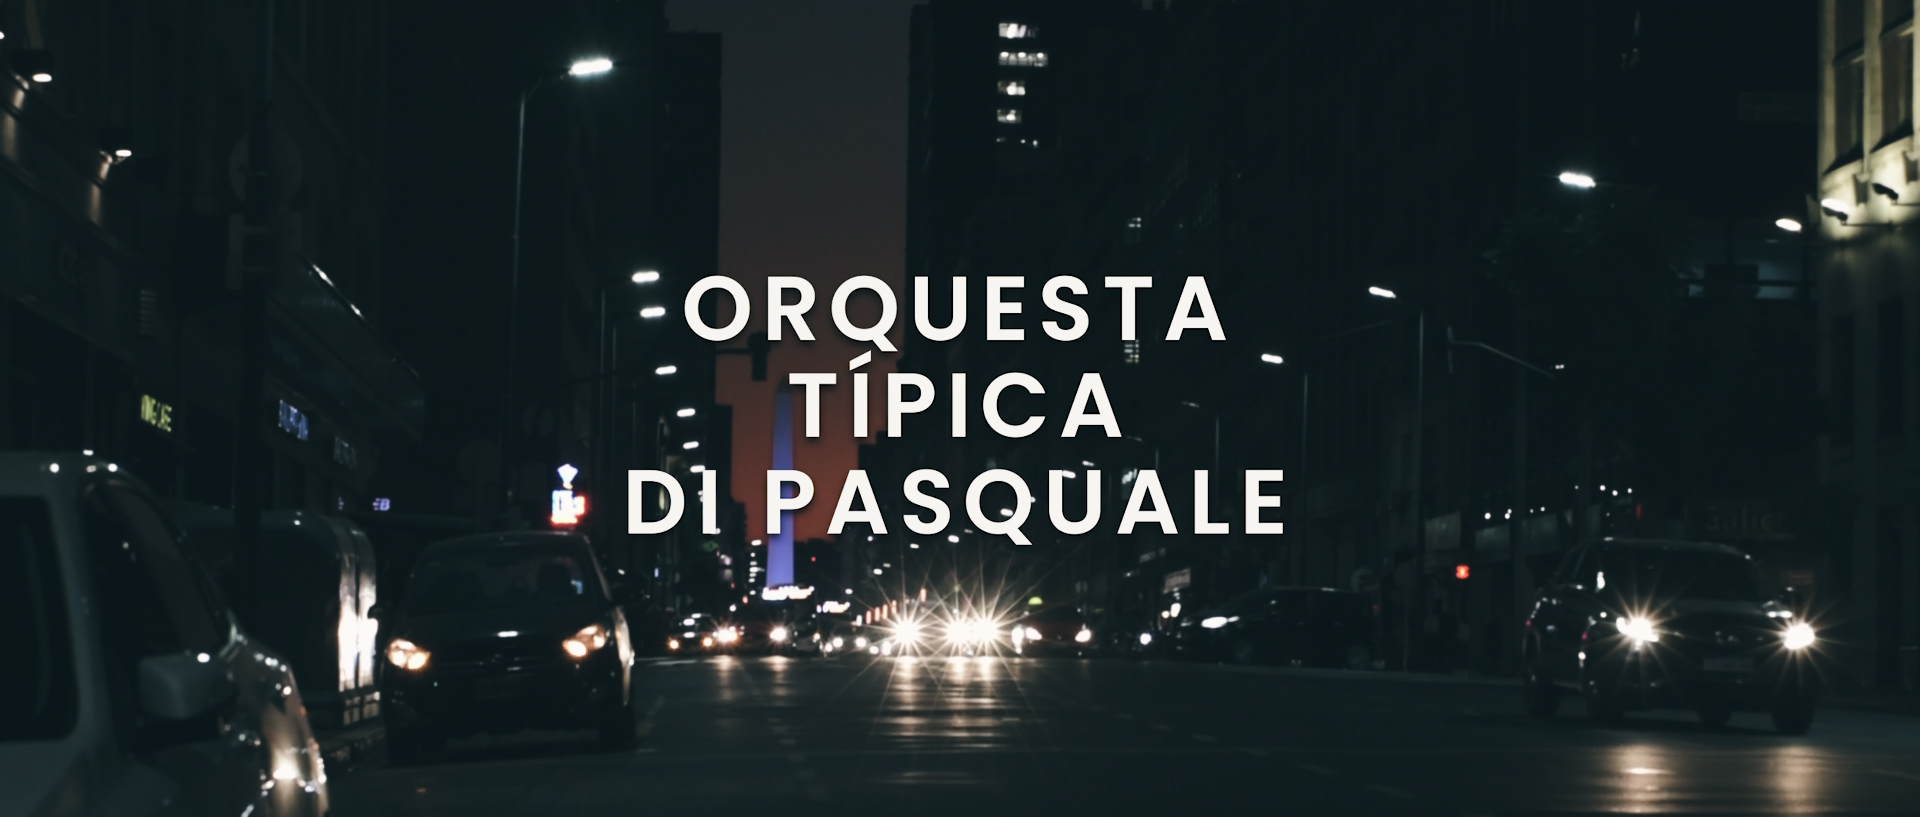 Orquesta Di Pasquale